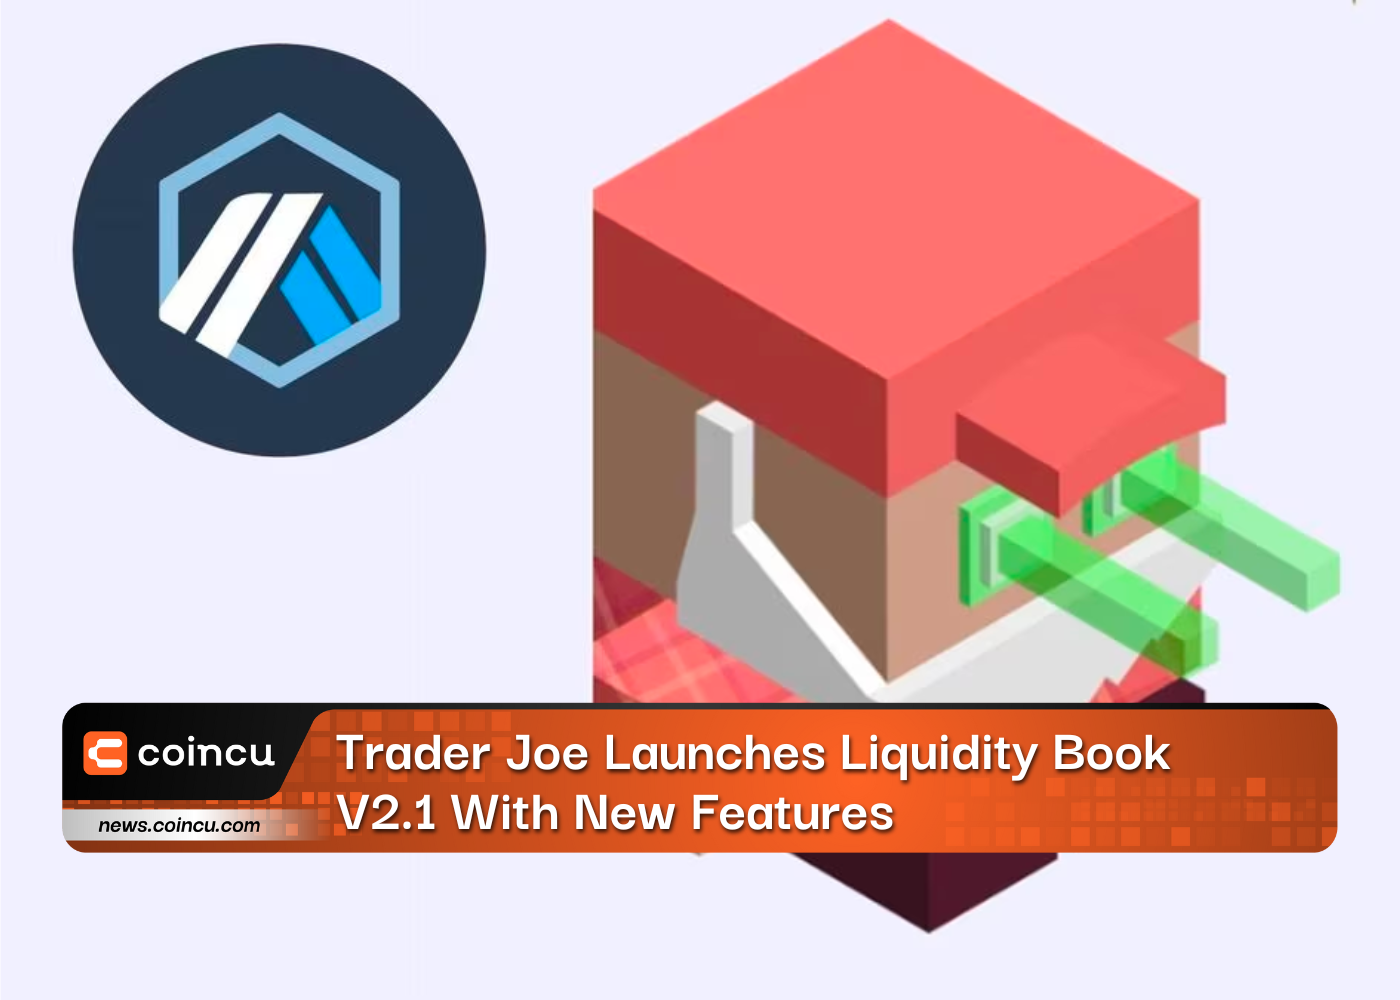 Trader Joe 推出具有新功能的流动性手册 V2.1